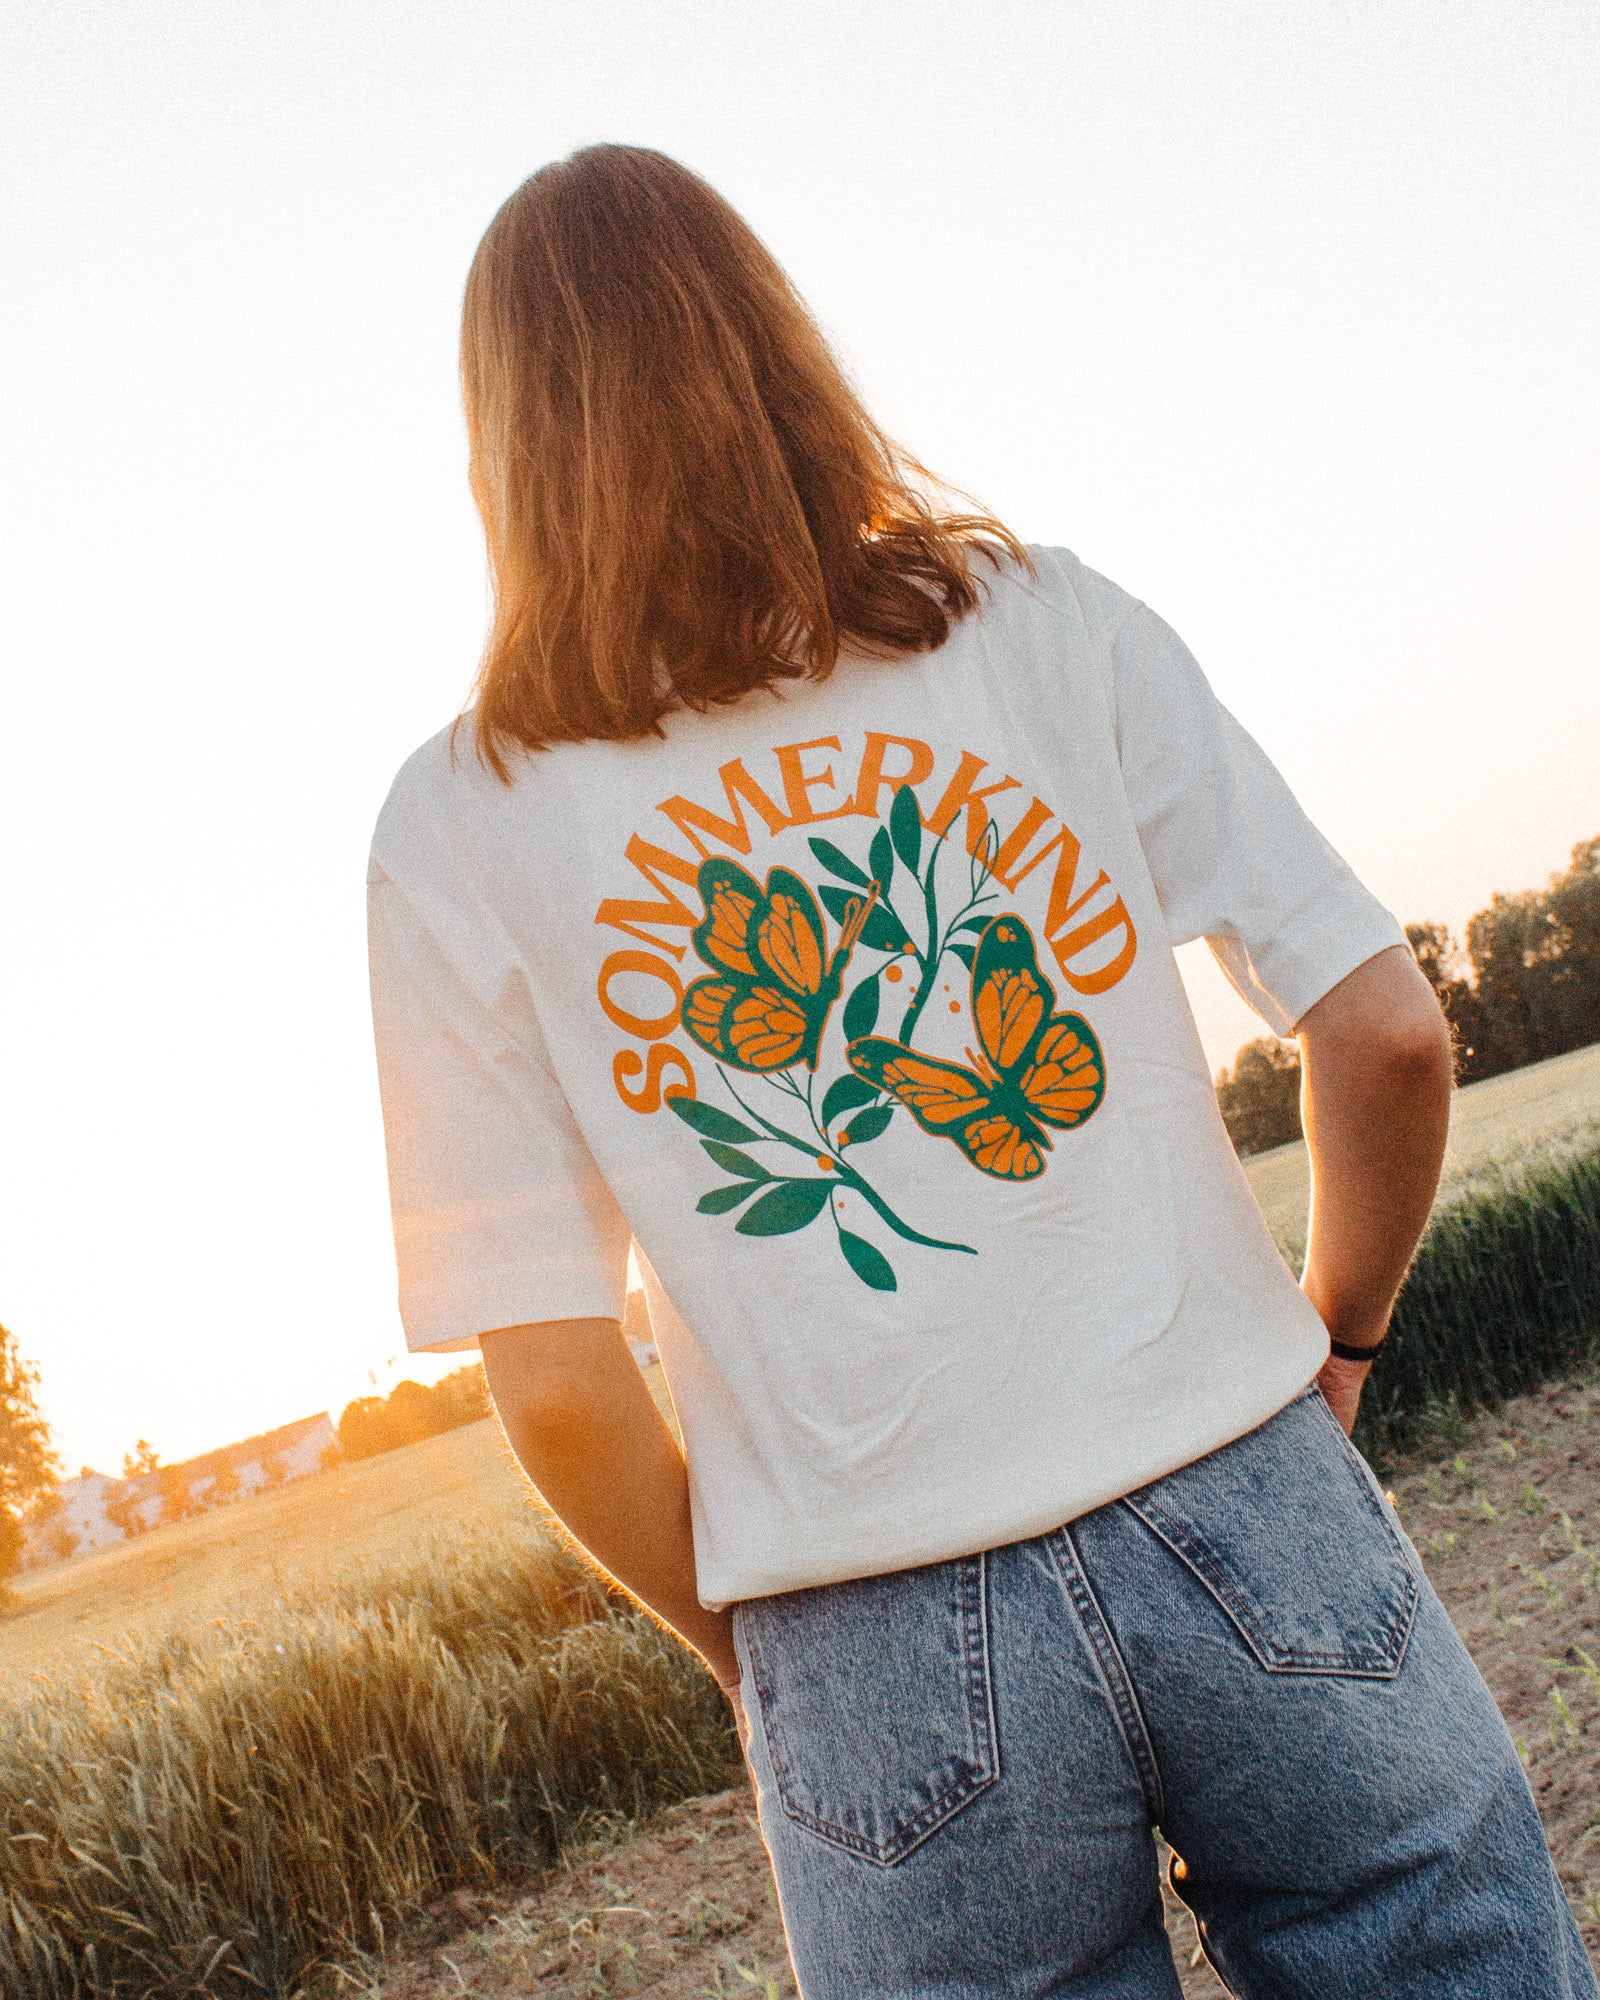 Weibliches Model trägt ein weißes T-Shirt mit einem Schmetterlingsmotiv und einem orangem 